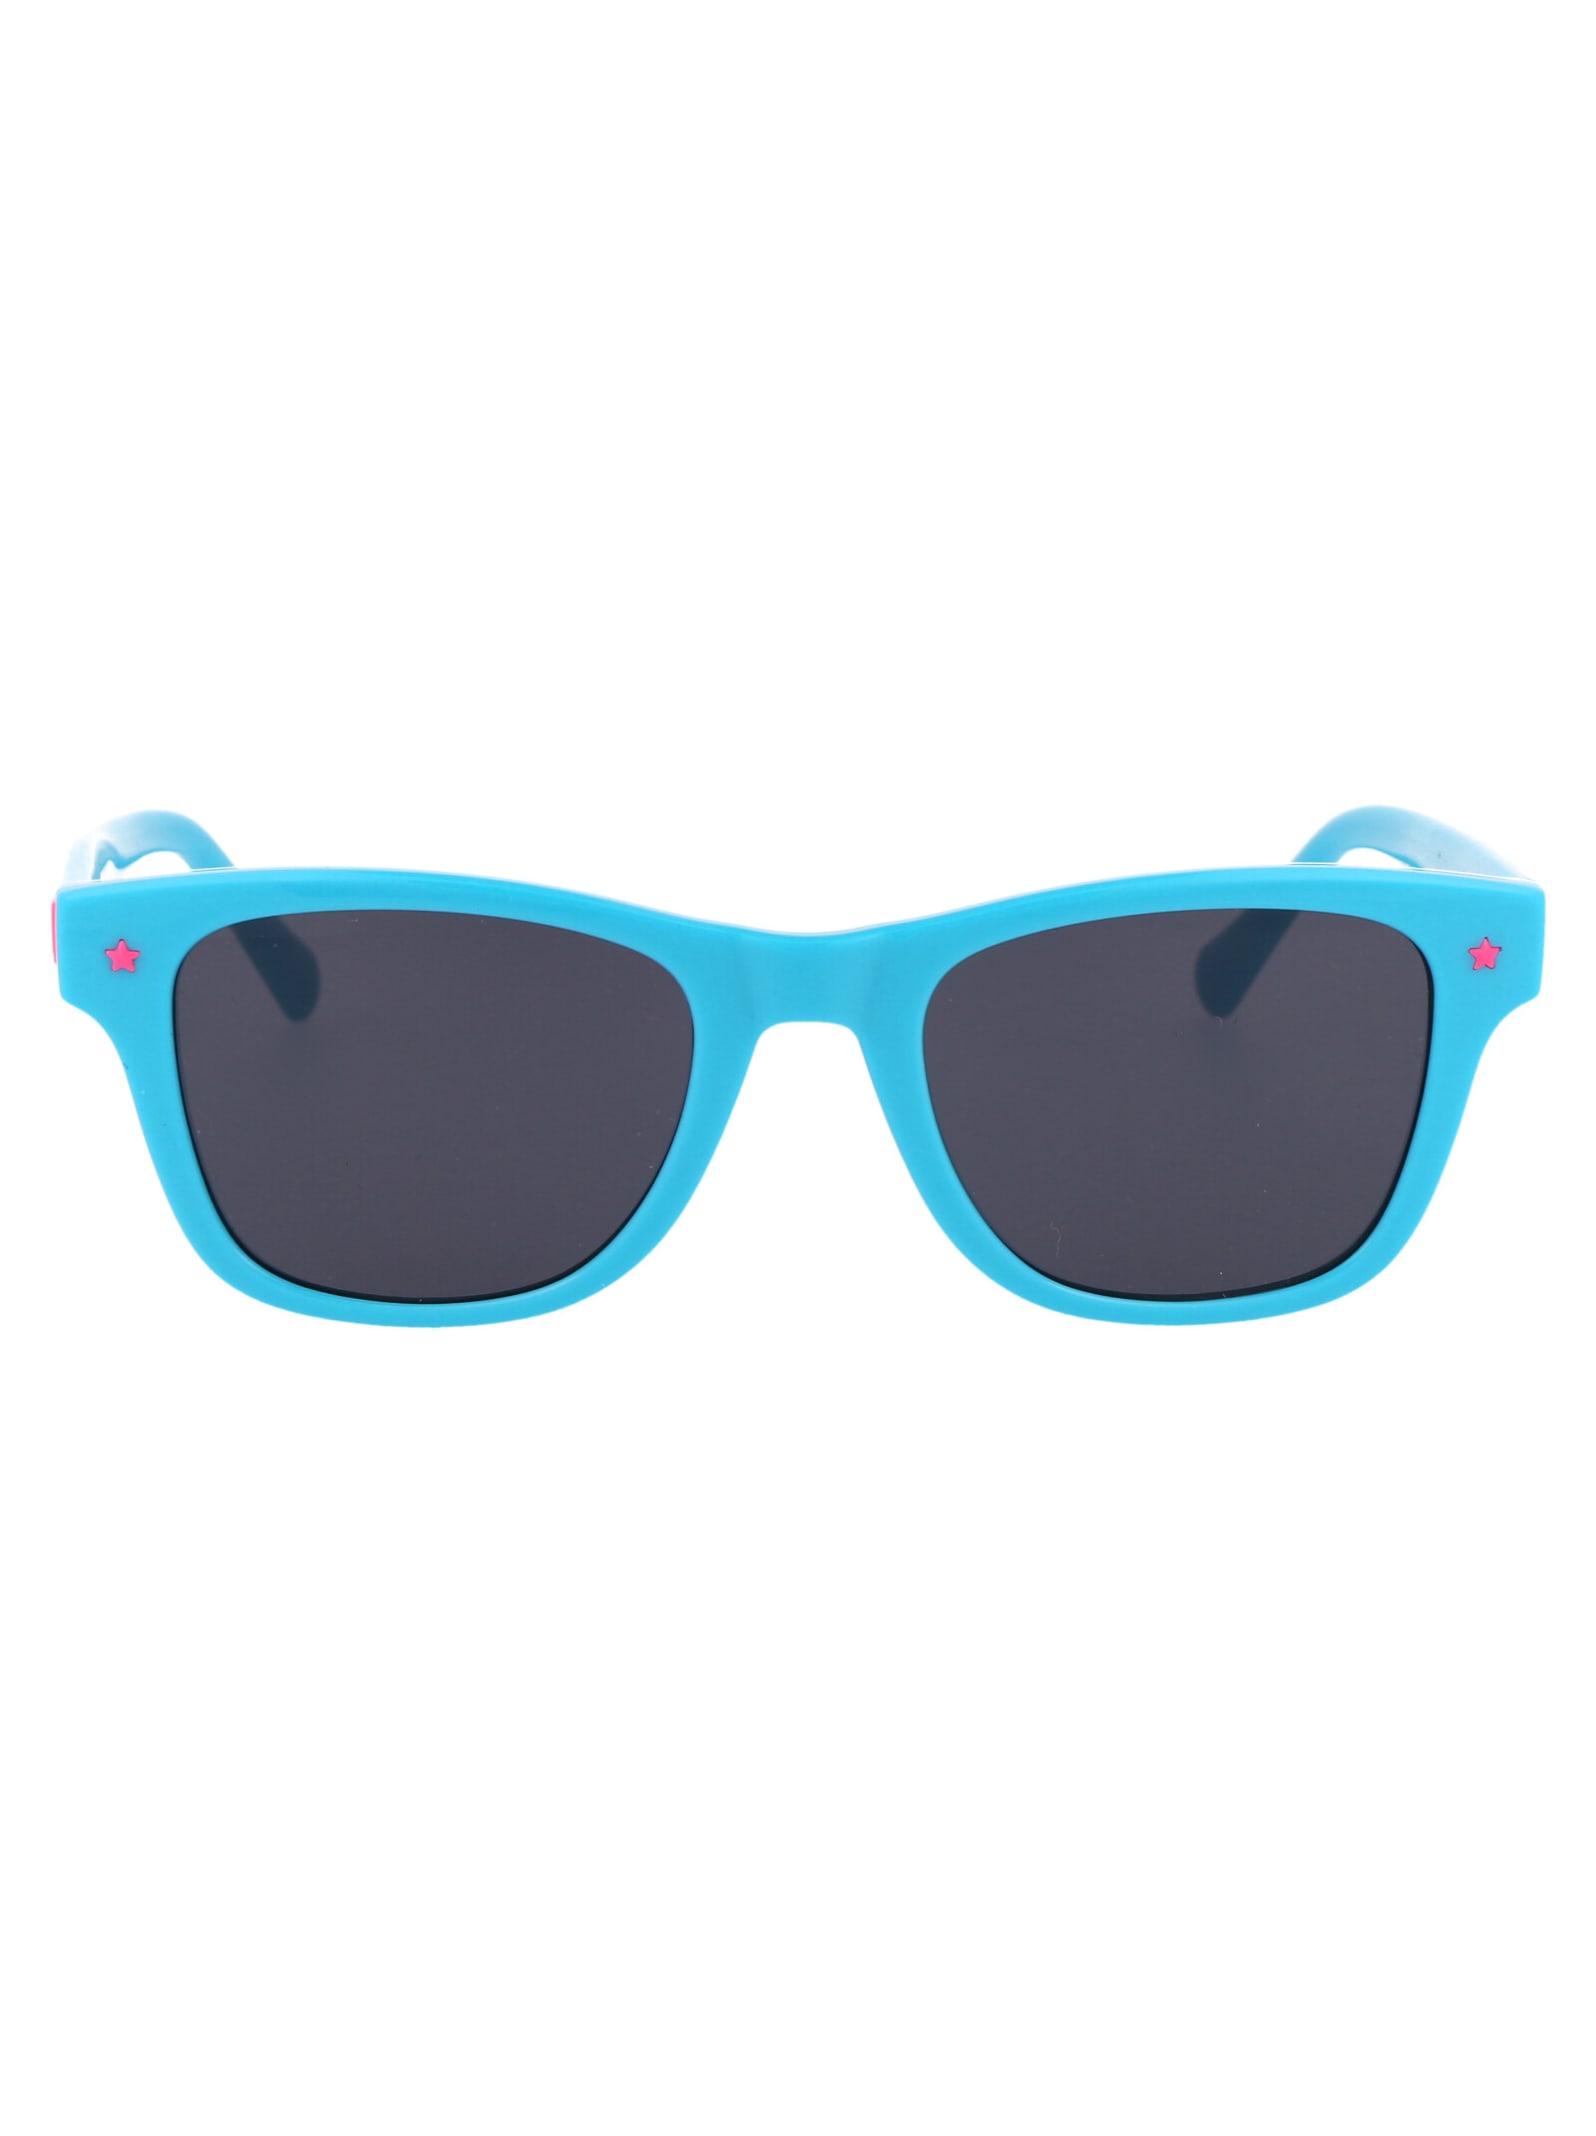 Cf 1006/s Sunglasses